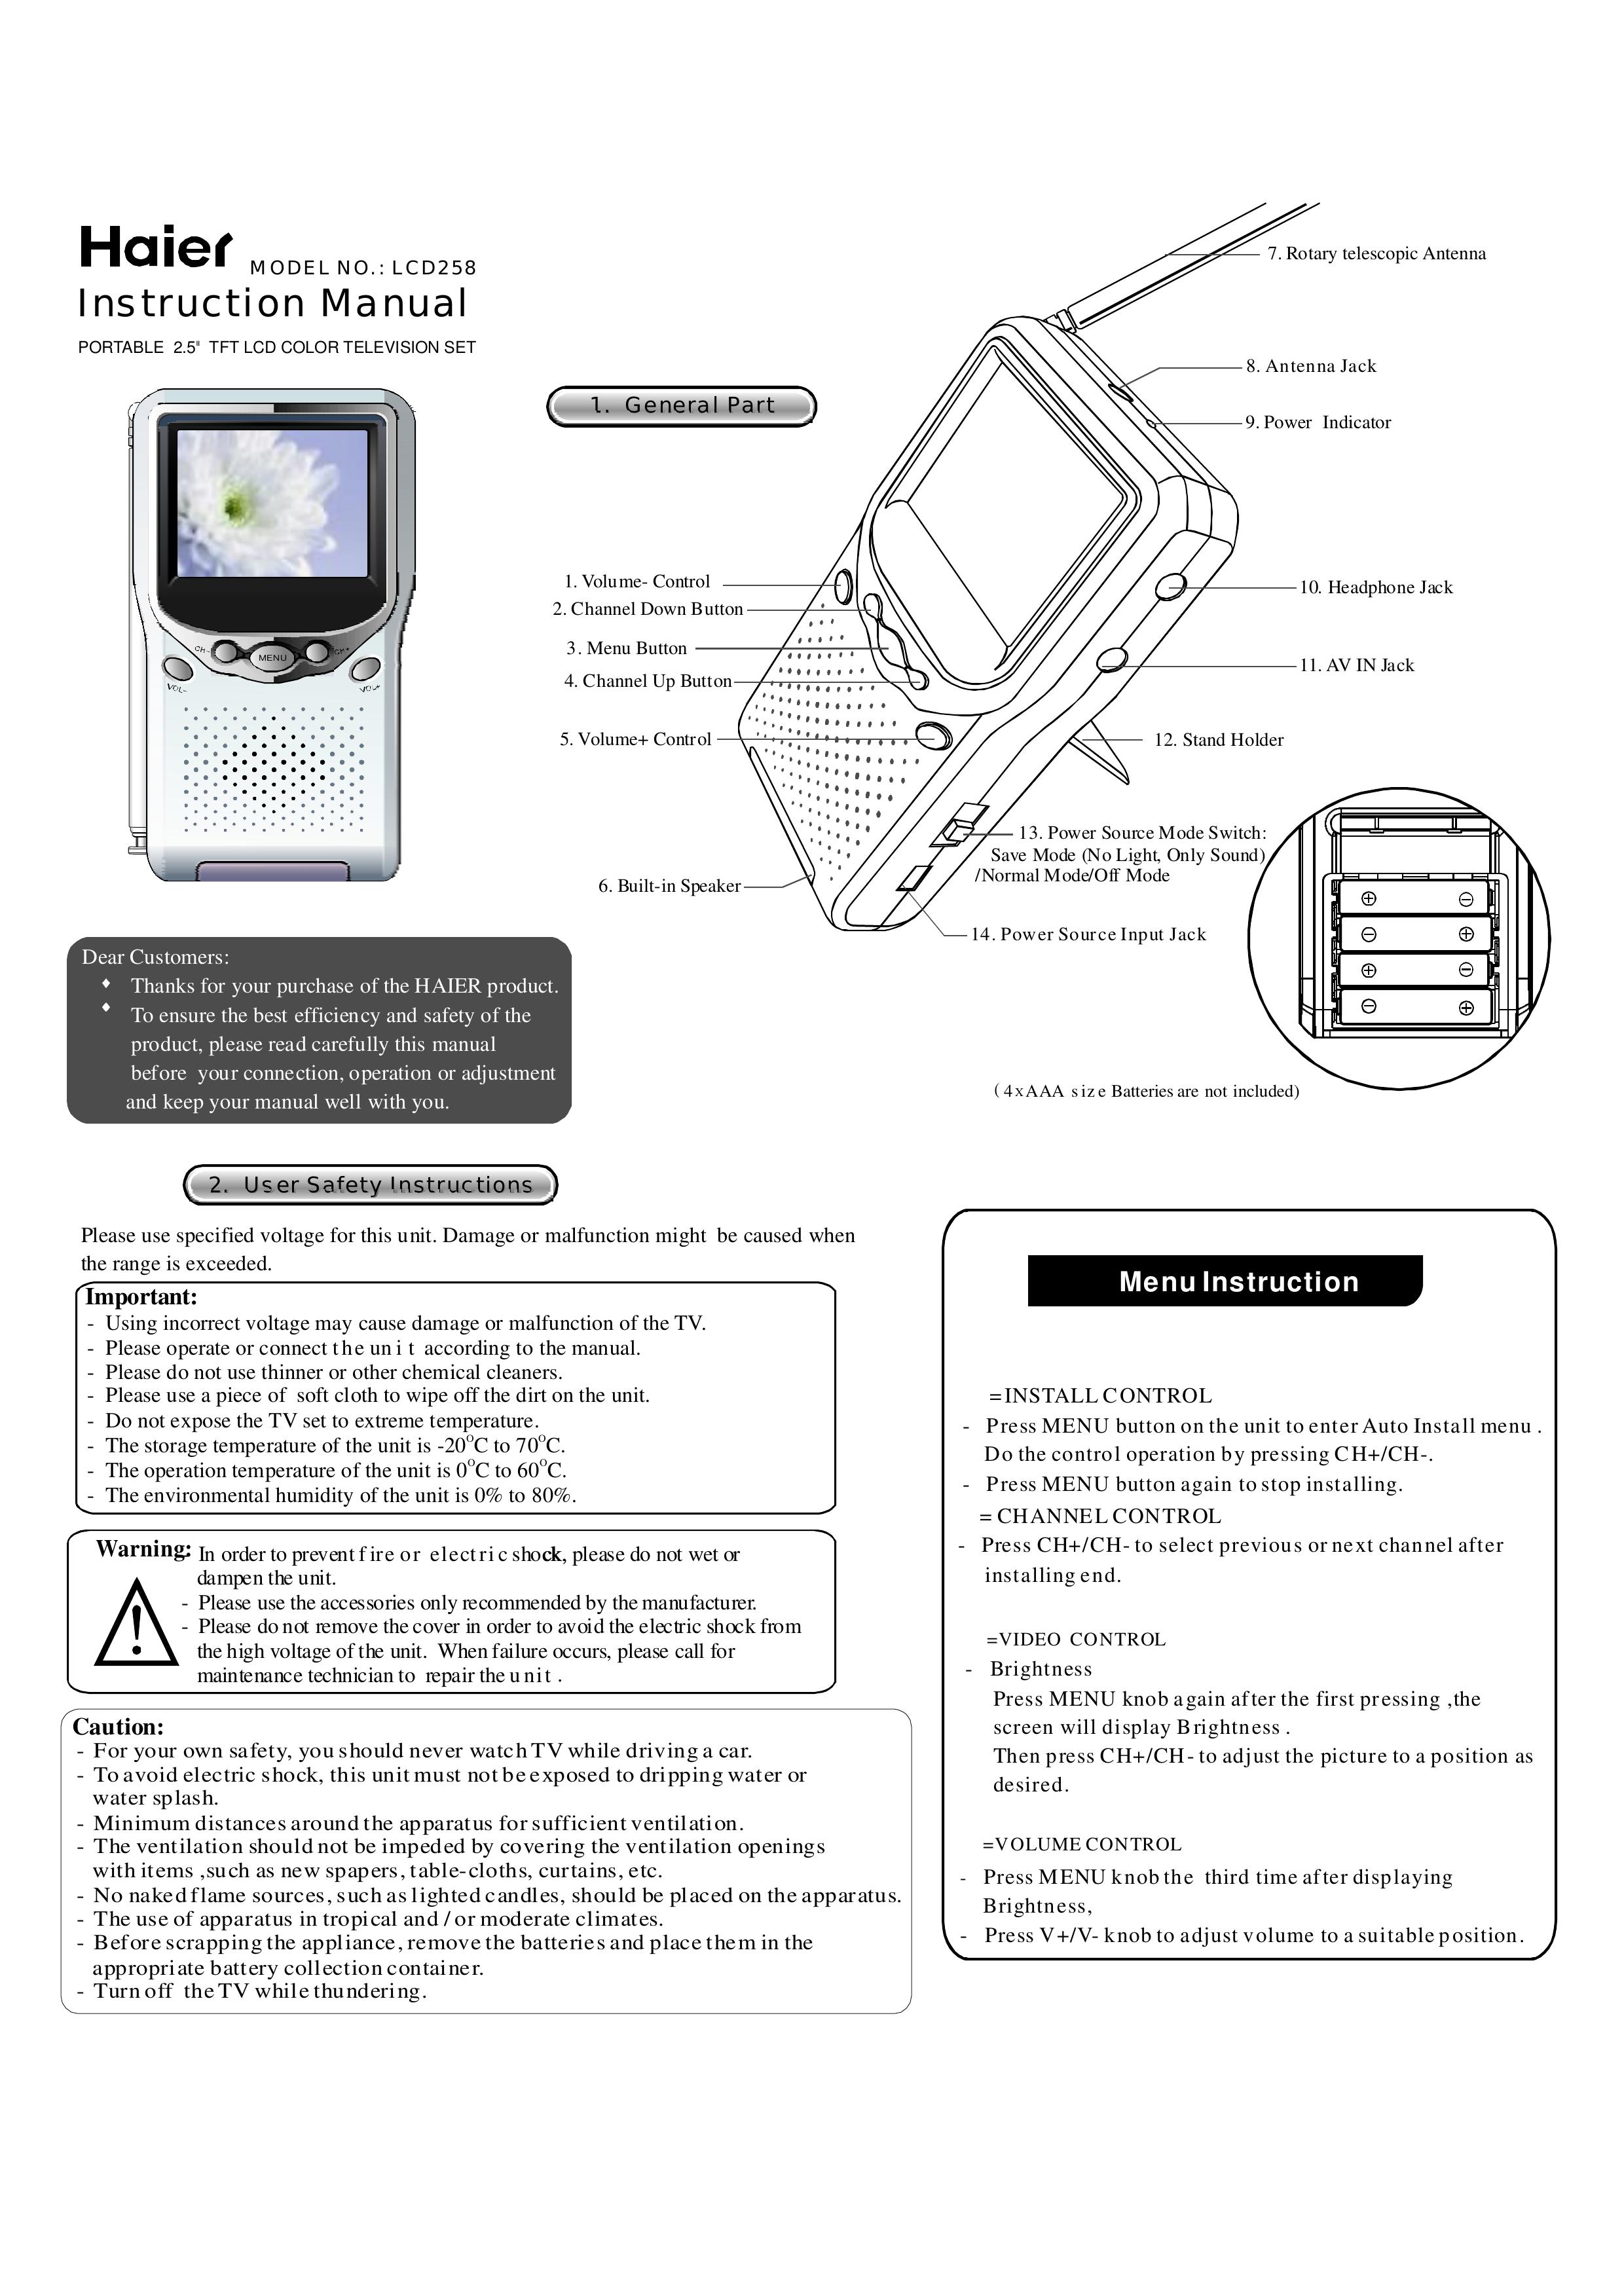 Haier LCD258 Handheld TV User Manual